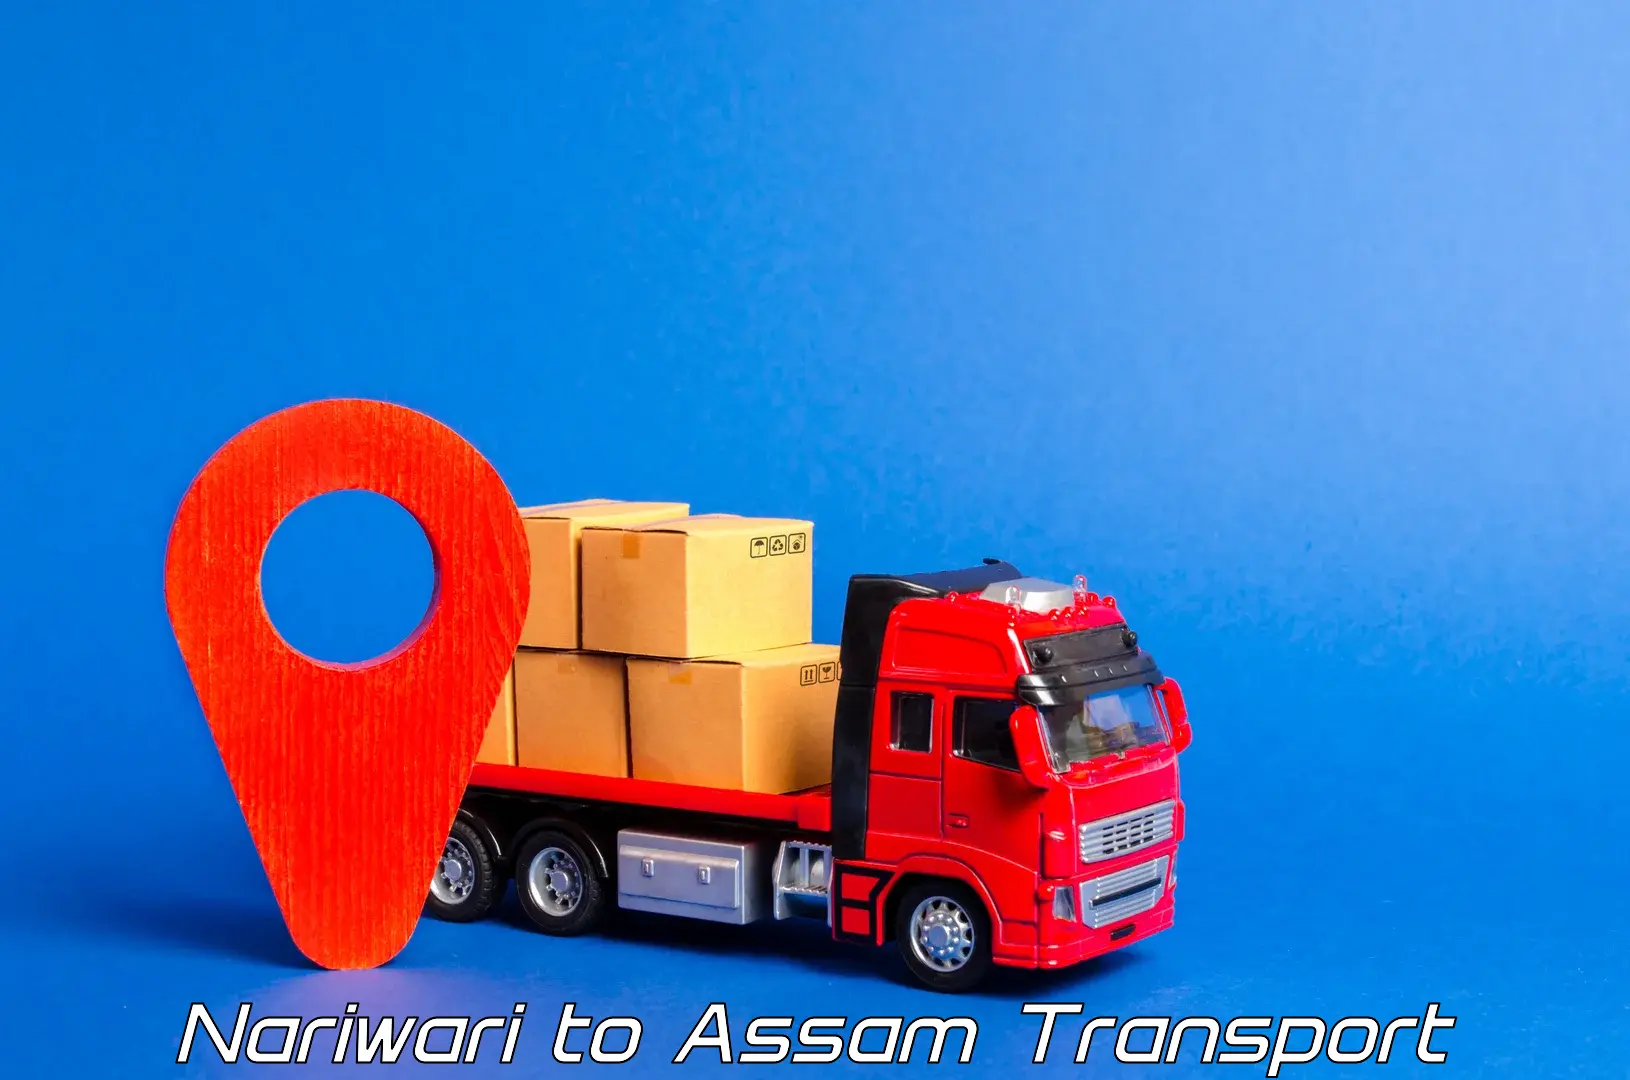 Furniture transport service Nariwari to Assam